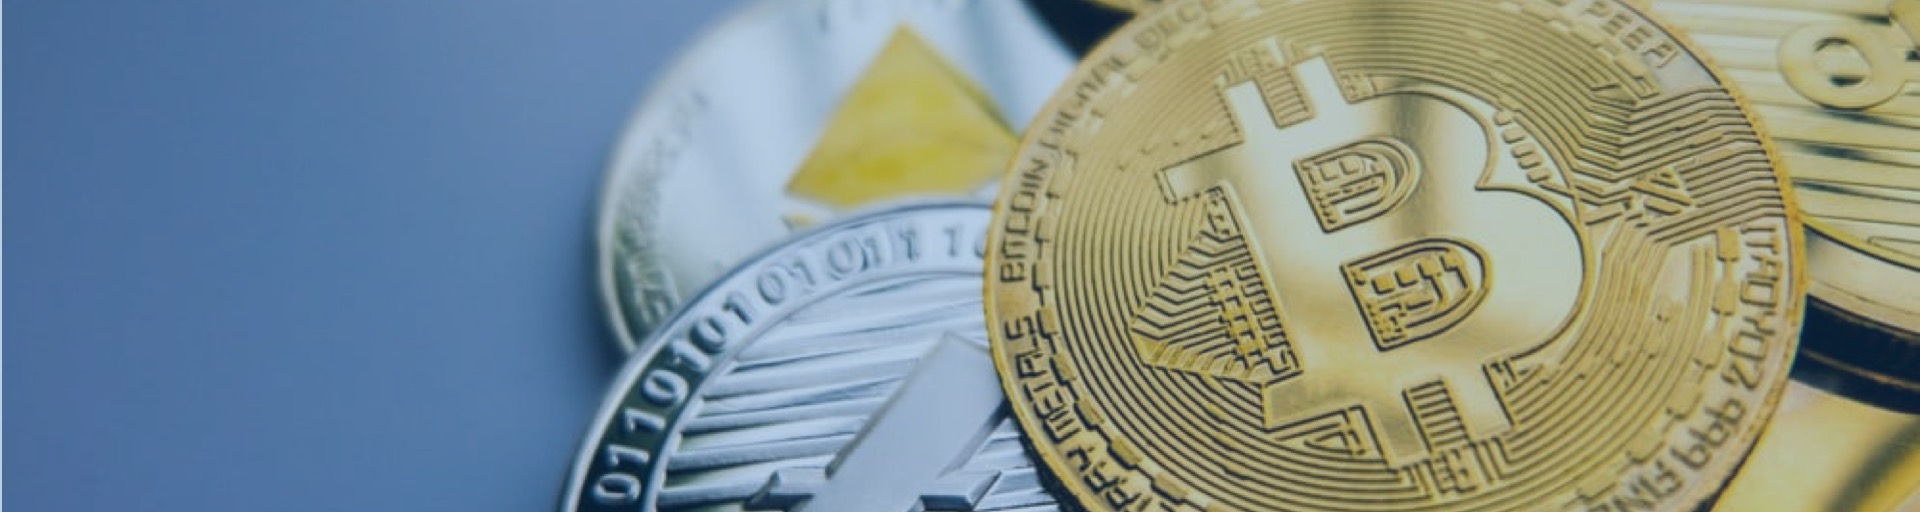 bitcoin-monedas-trading